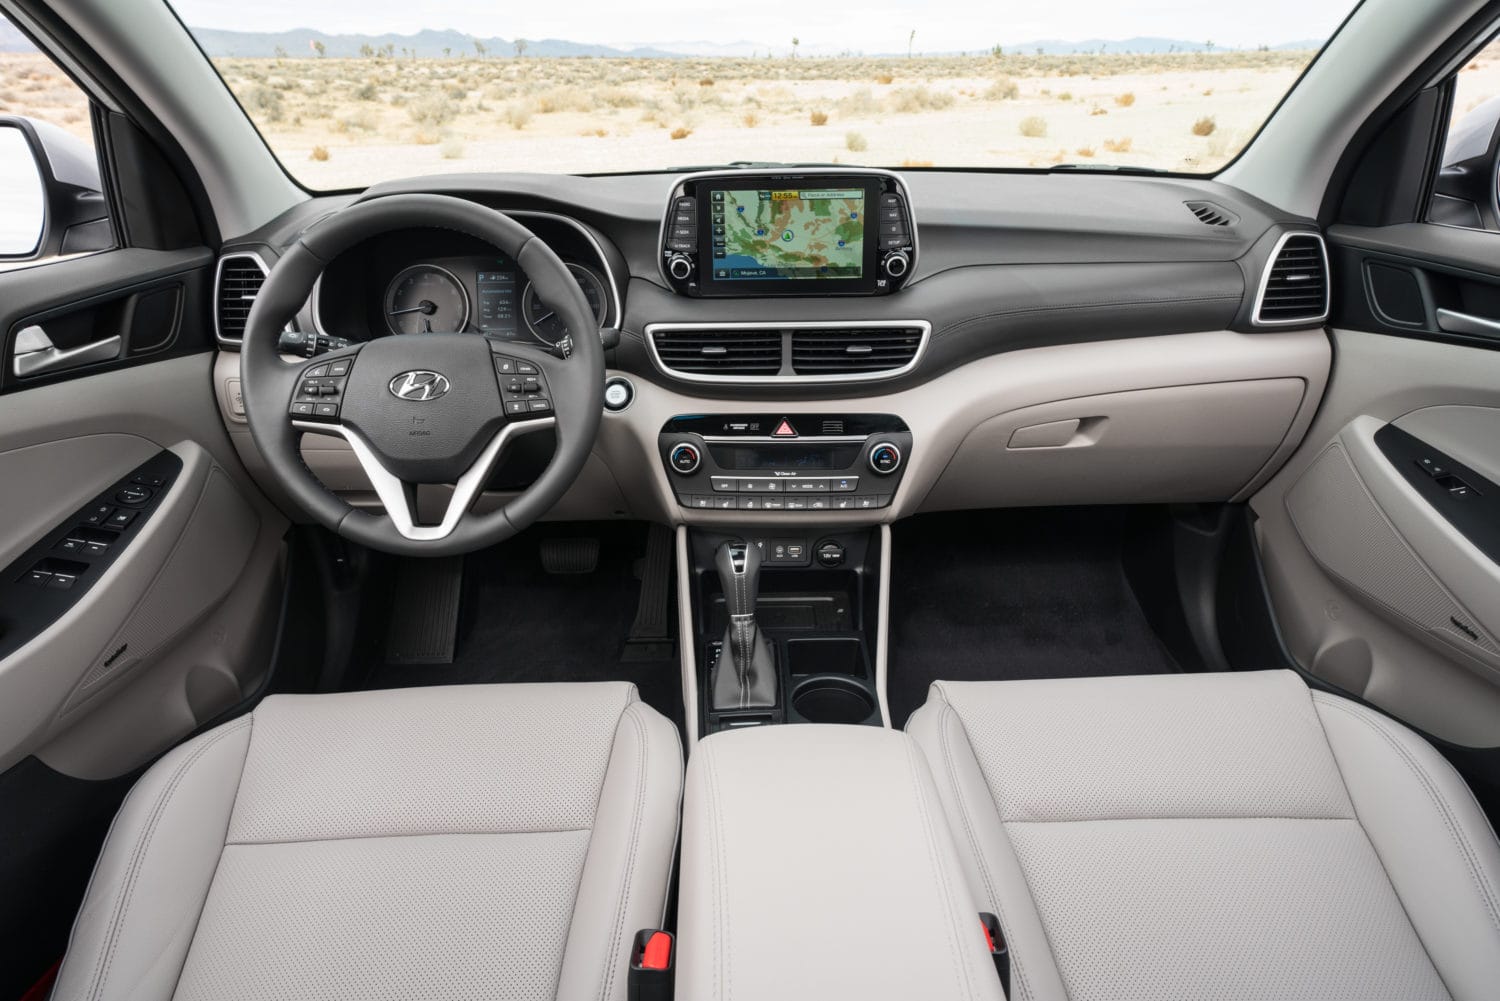 2019 Hyundai Tucson, A CUV To Consider 